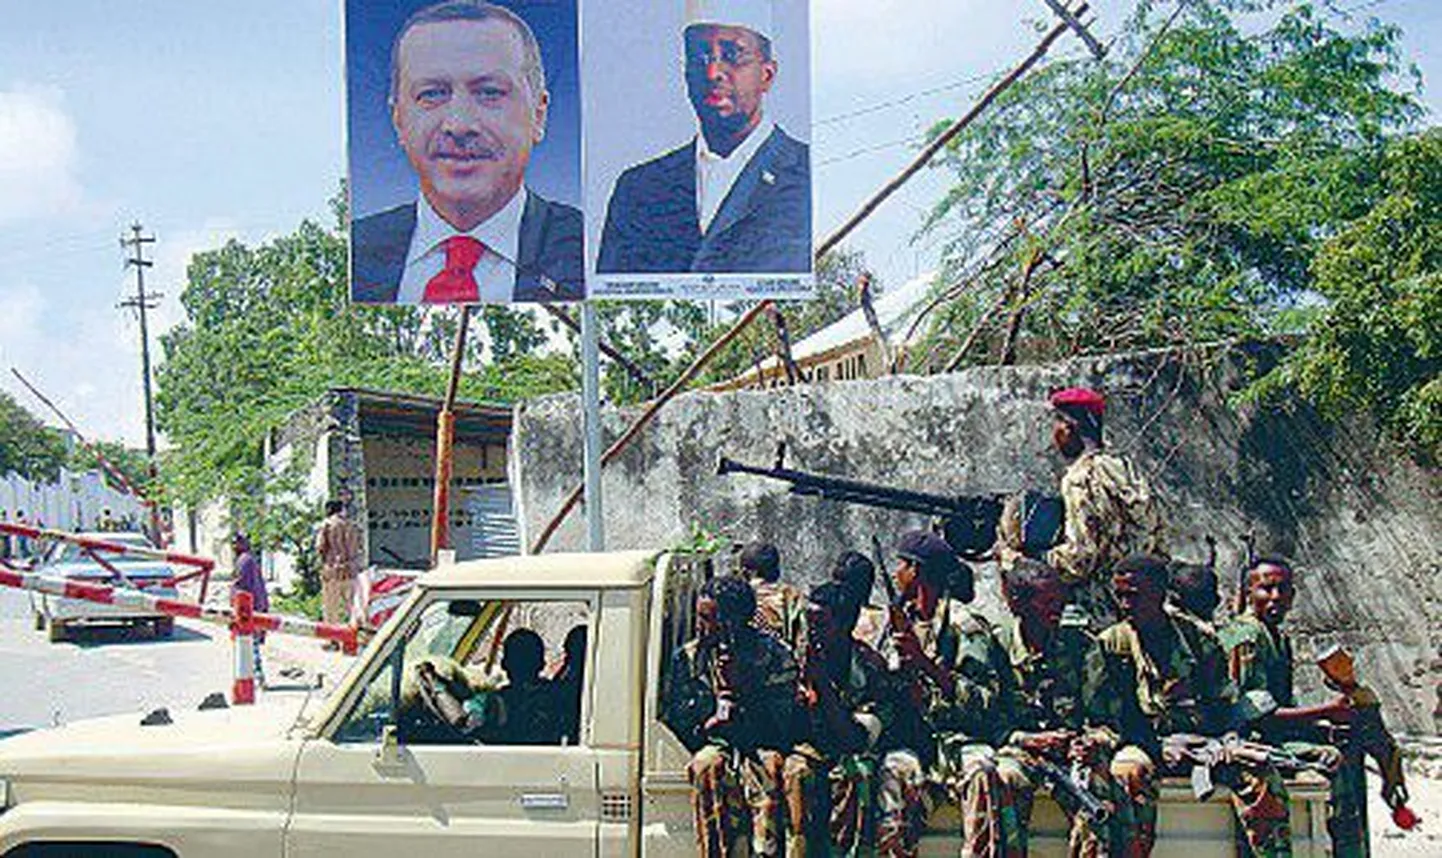 Somaalia sõdurid sisenemas presidendipalee territooriumile. Inimõiguslaste väitel asub seal ka CIA salavangla.